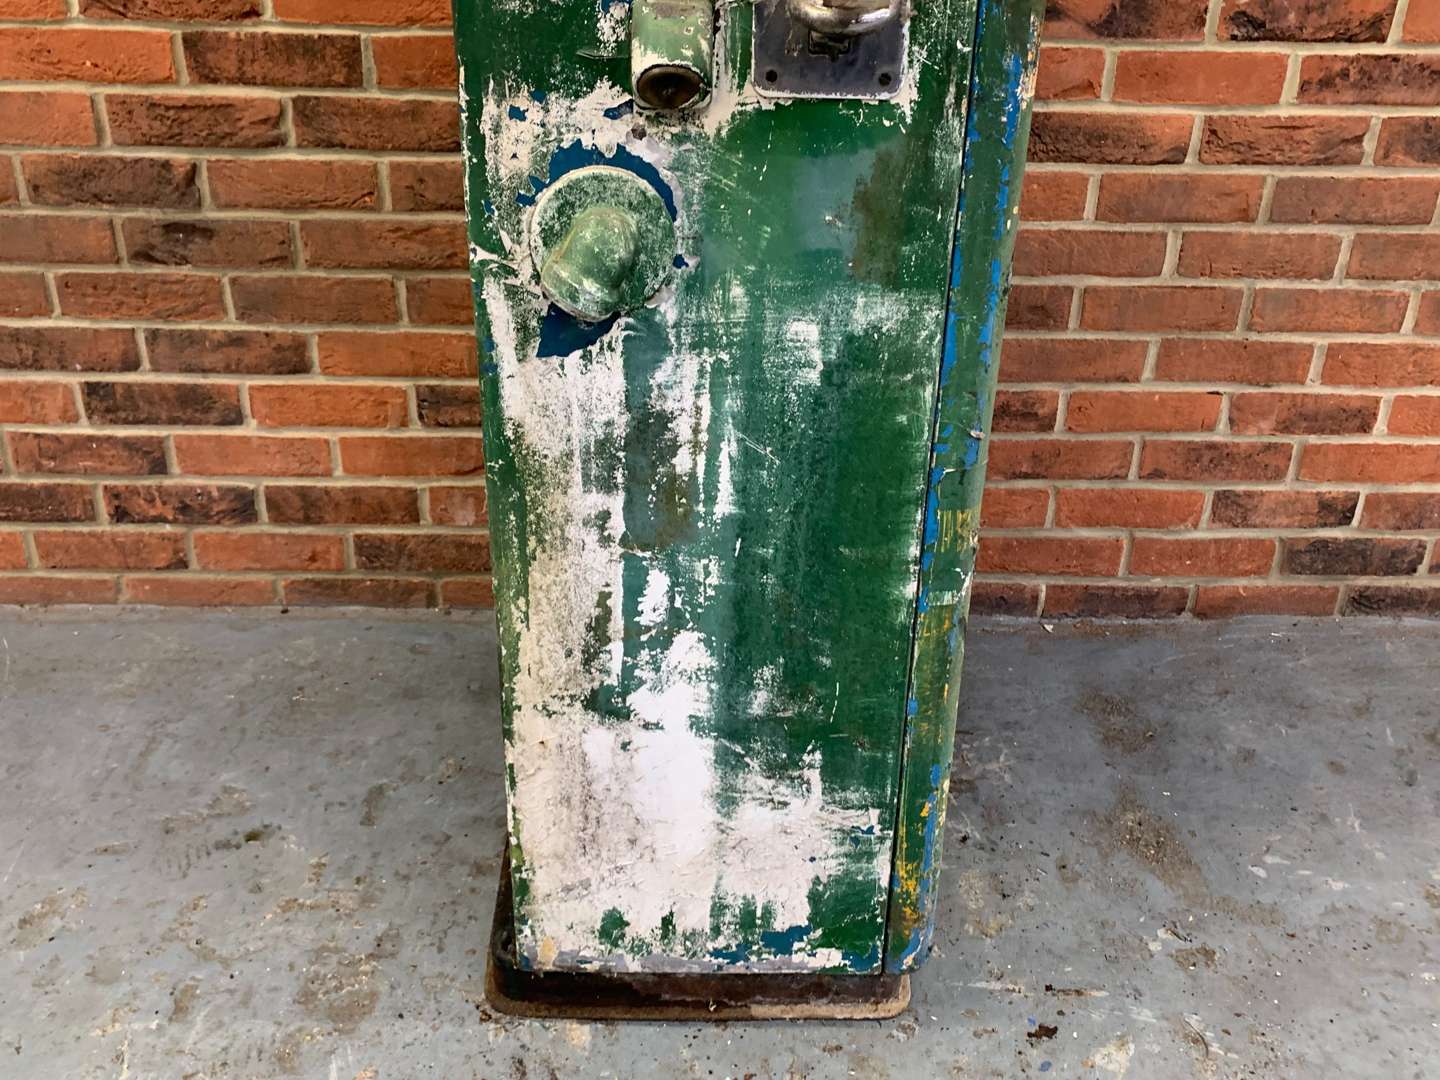 <p>Wayne Numerator Vintage Petrol Pump</p>